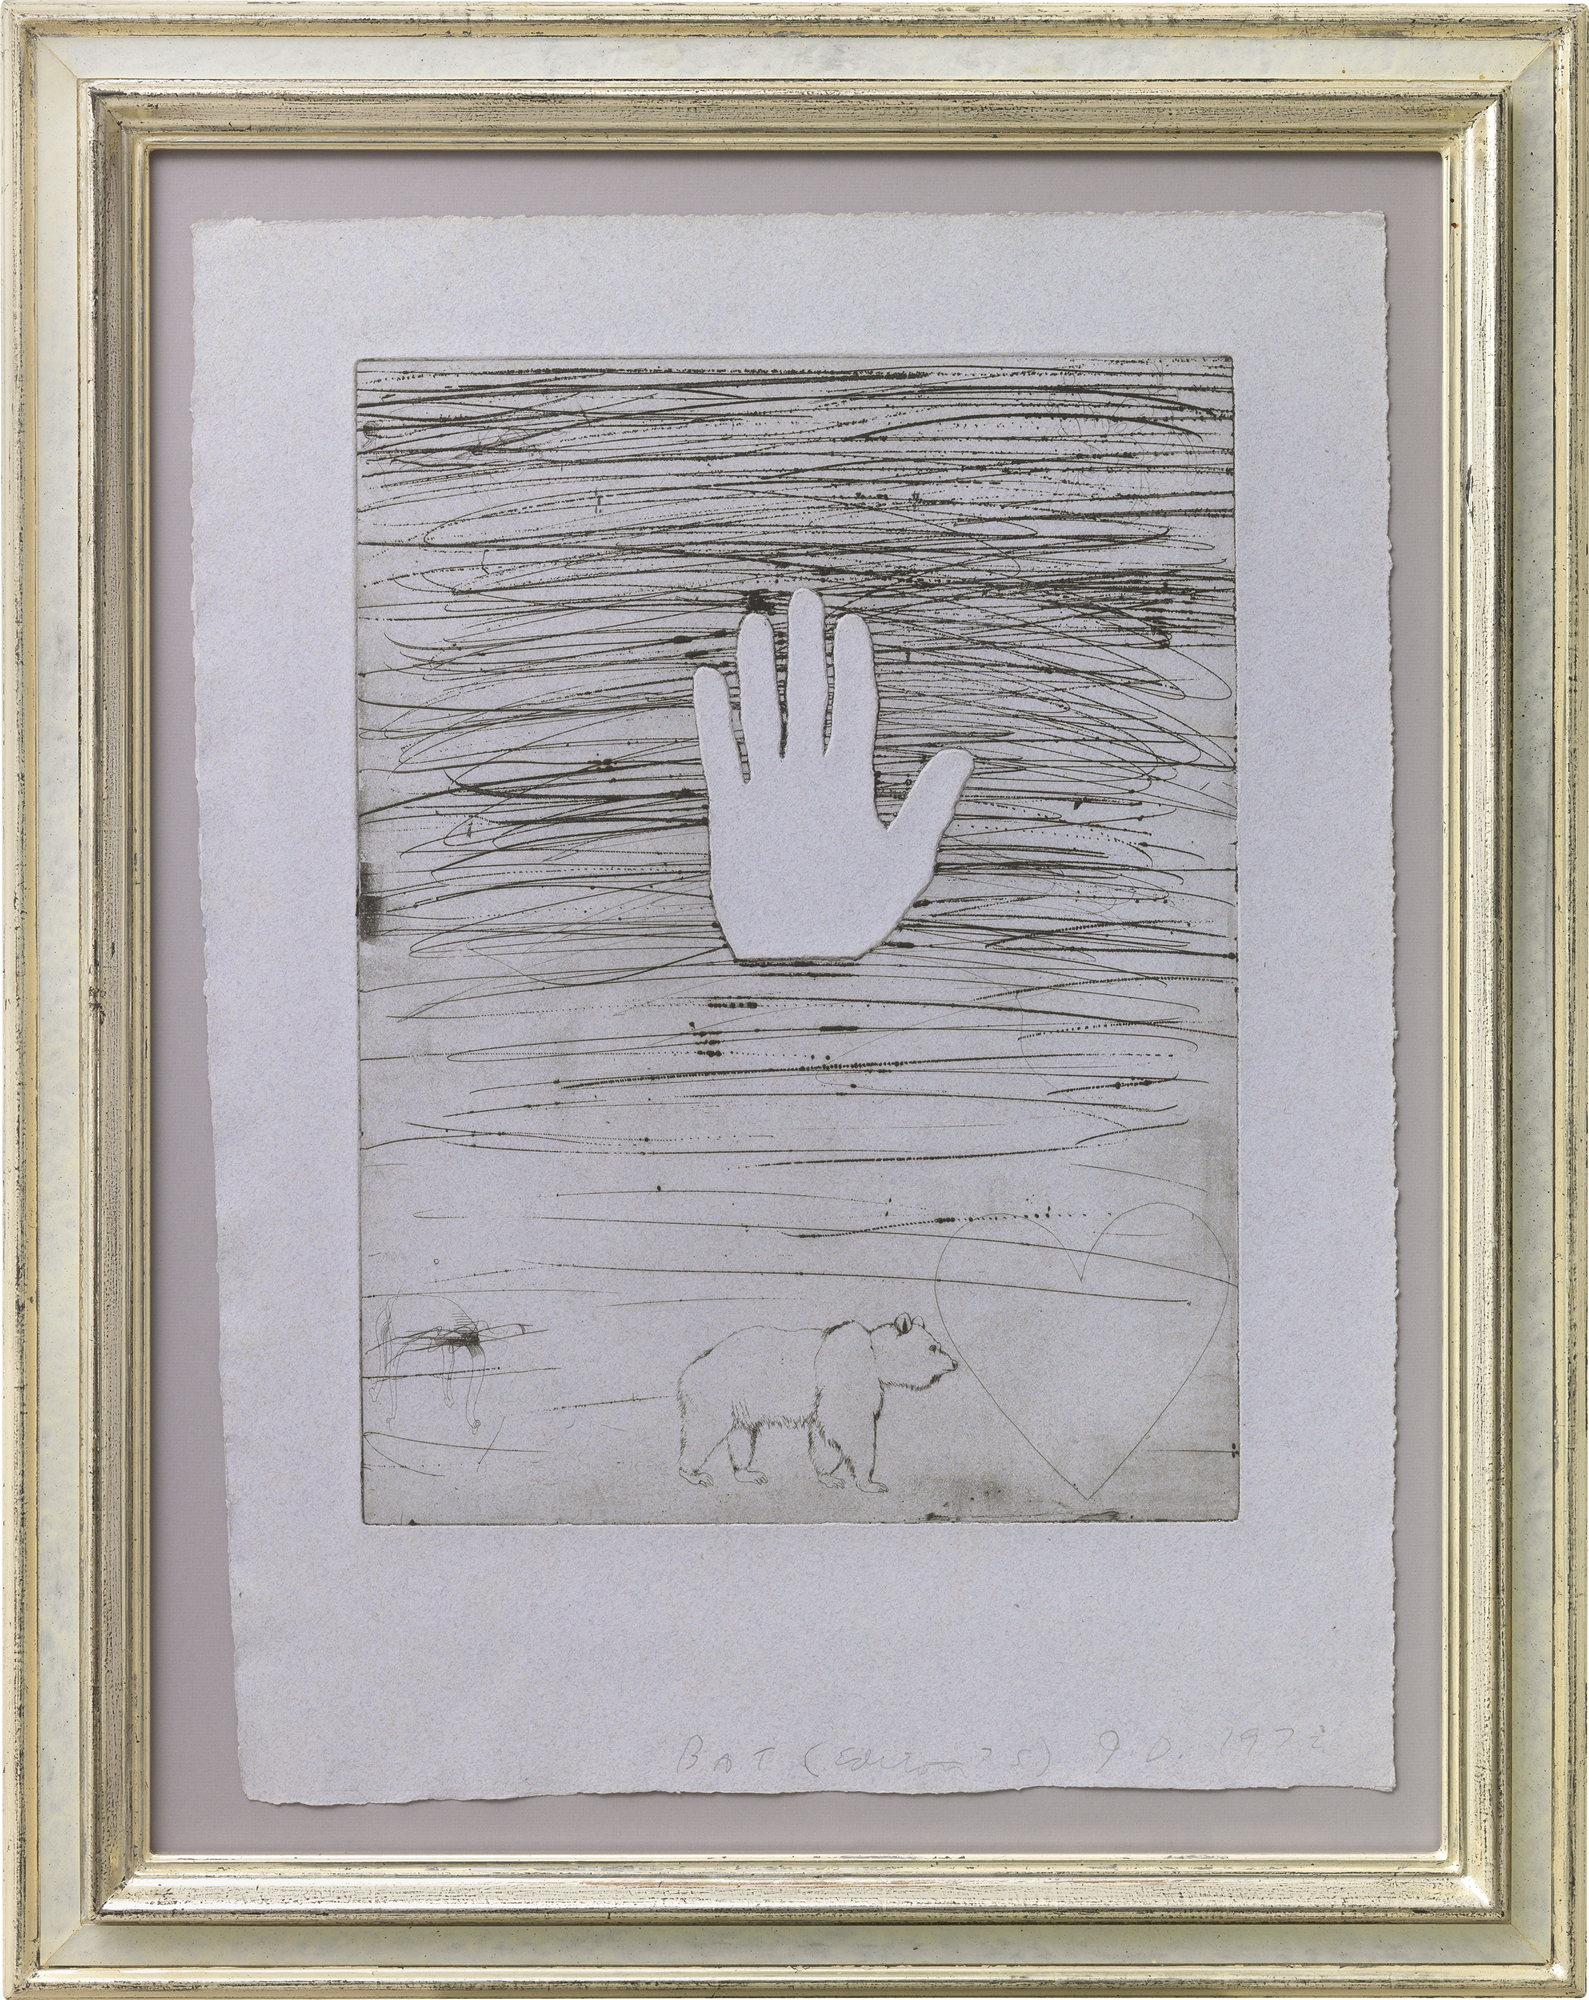 Bild "Hand" (1972) von Jim Dine